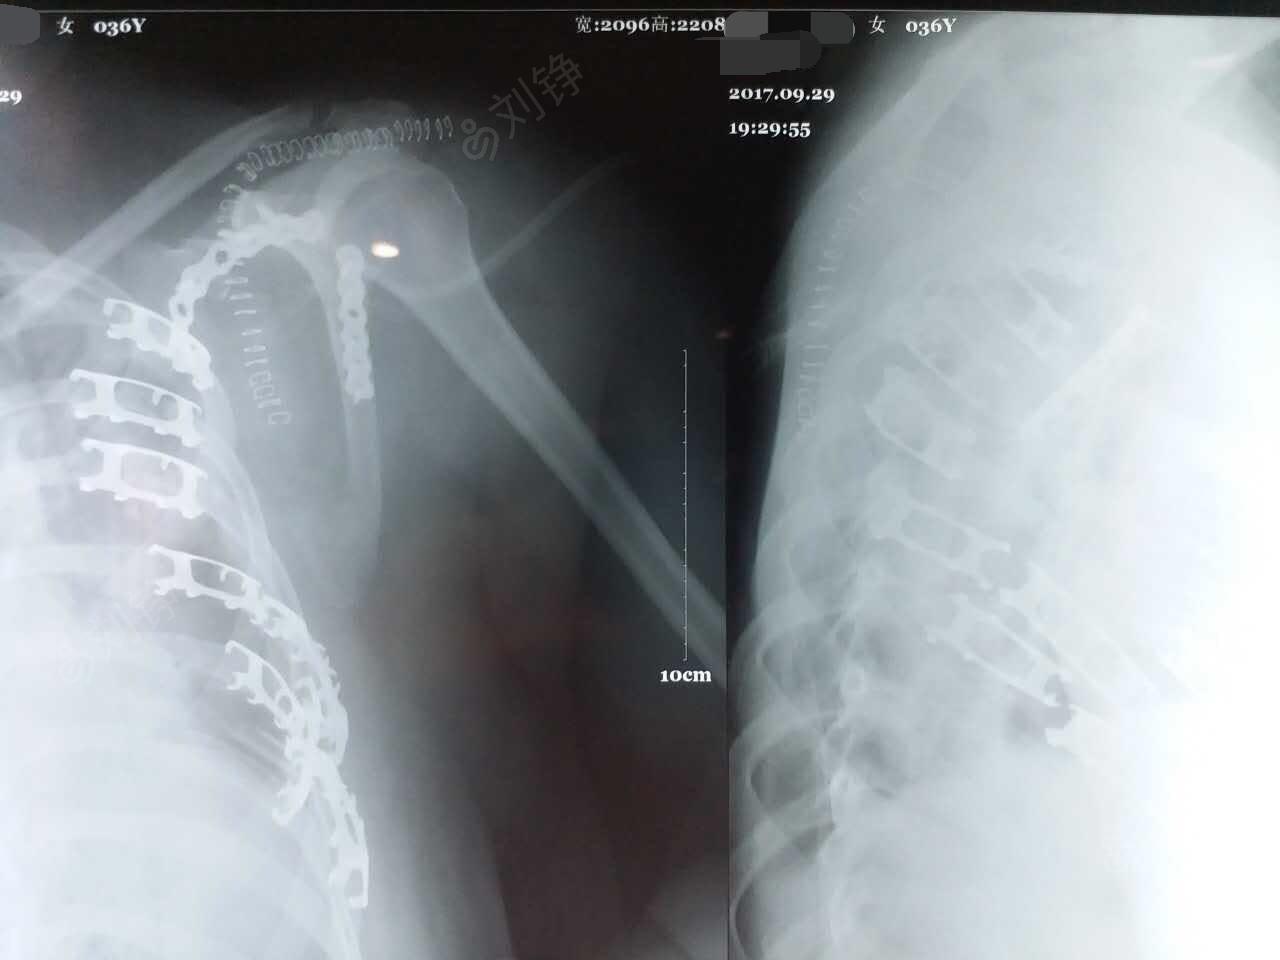 肩胛骨骨折(左,millerⅣ型)切开复位内固定